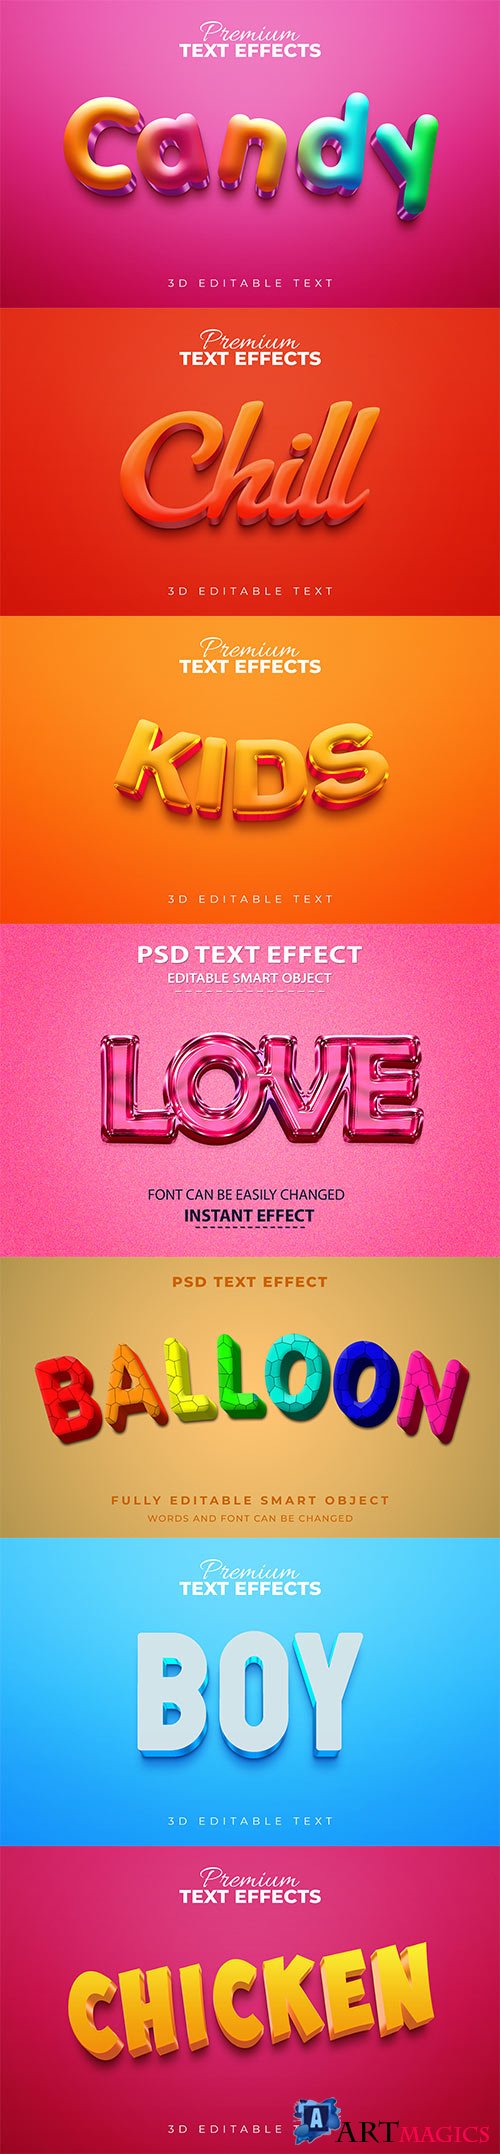 Psd text effect set vol 562